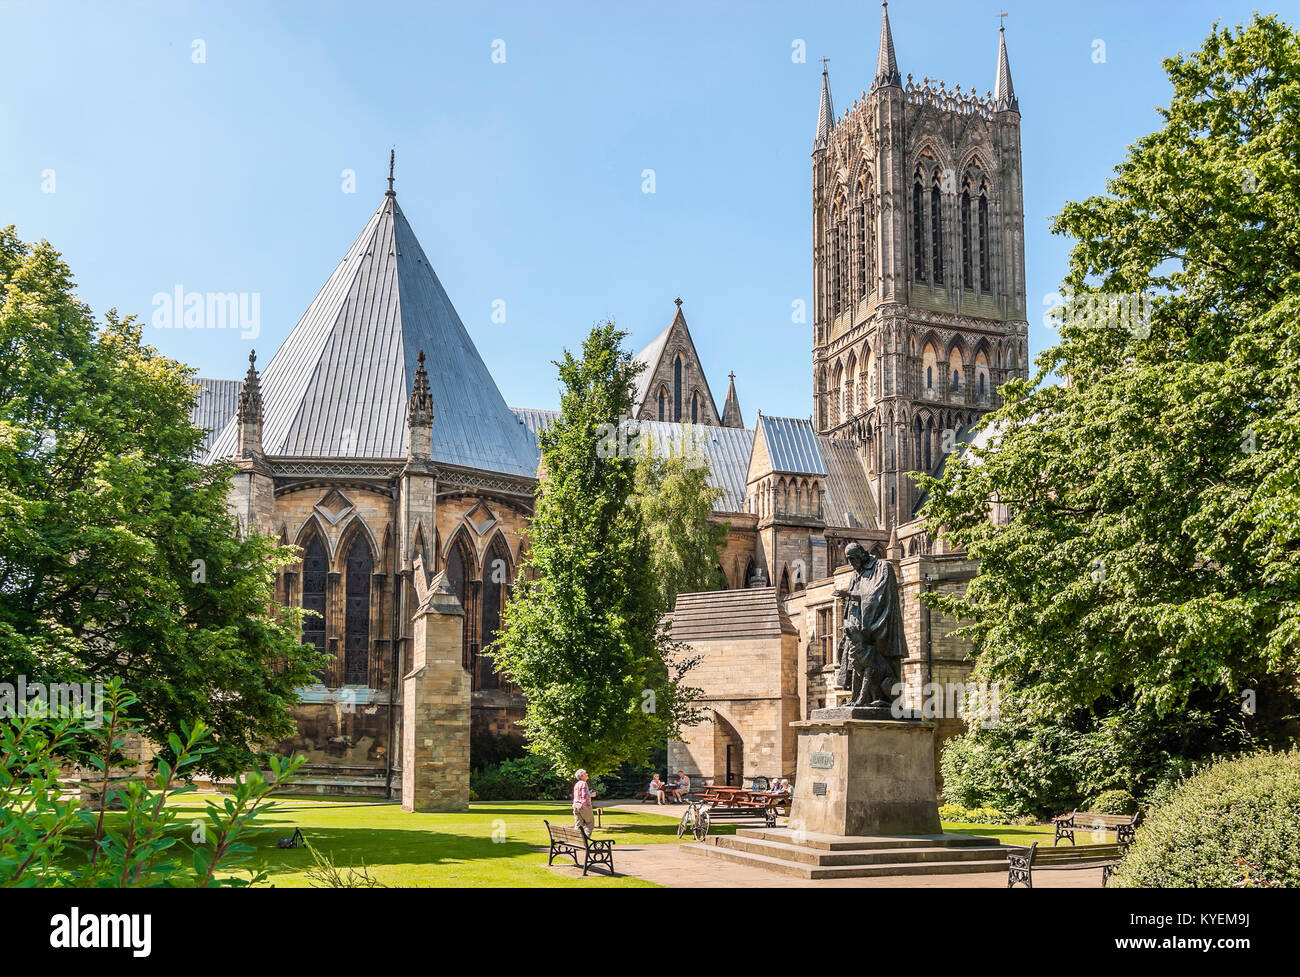 La cathédrale de Lincoln, dans la vieille ville, est une cathédrale anglicane historique de Lincoln, en Angleterre Banque D'Images